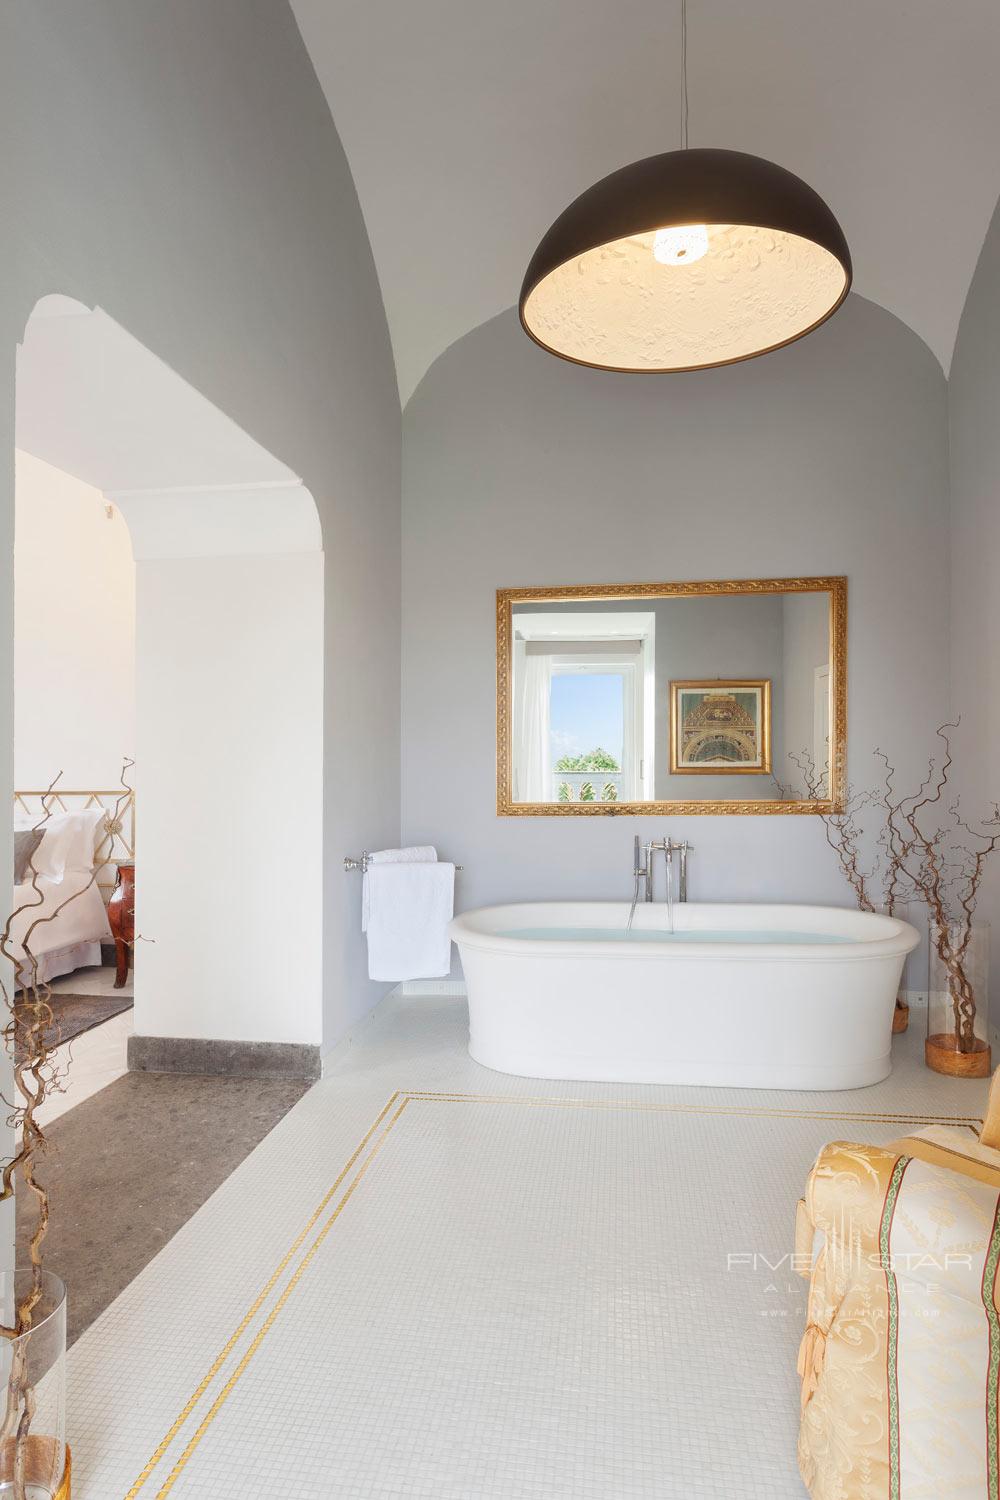 The Suite Sea View Bathroom at Grand Hotel Cocumella in Sant'Agnello di Sorrento, Italy